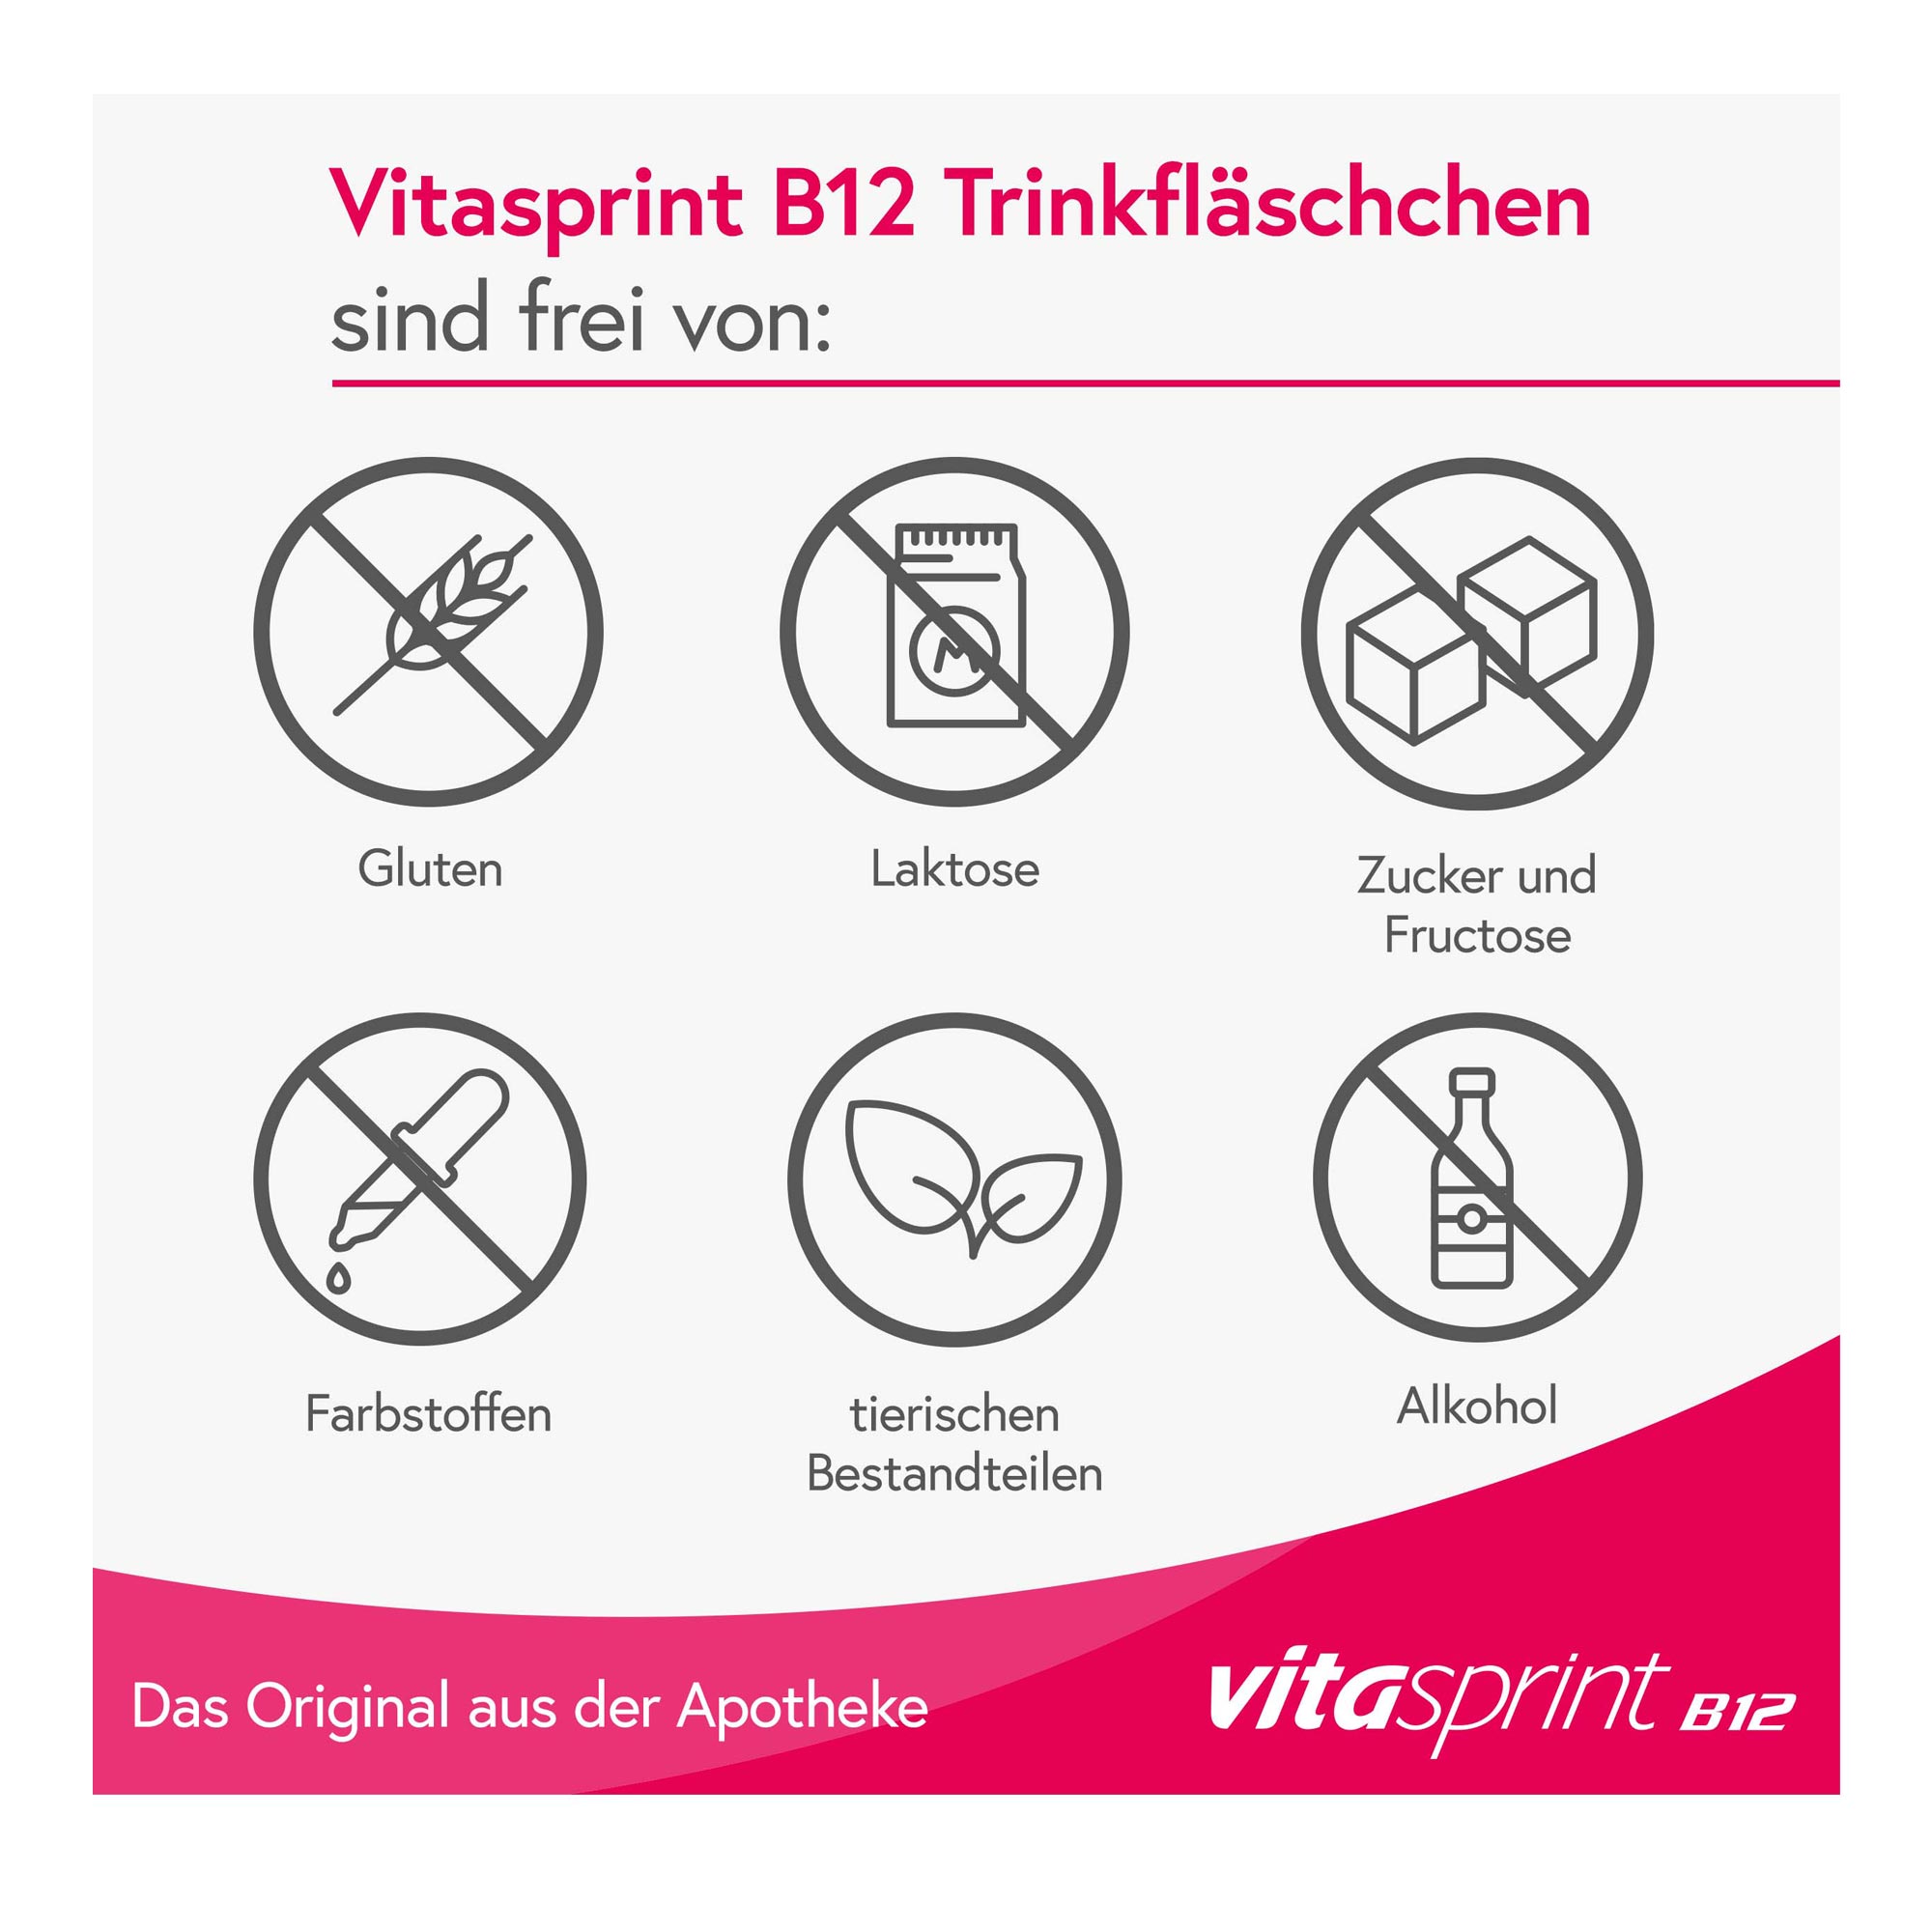 Vitasprint B12 Trinkfläschchen Eigenschaften